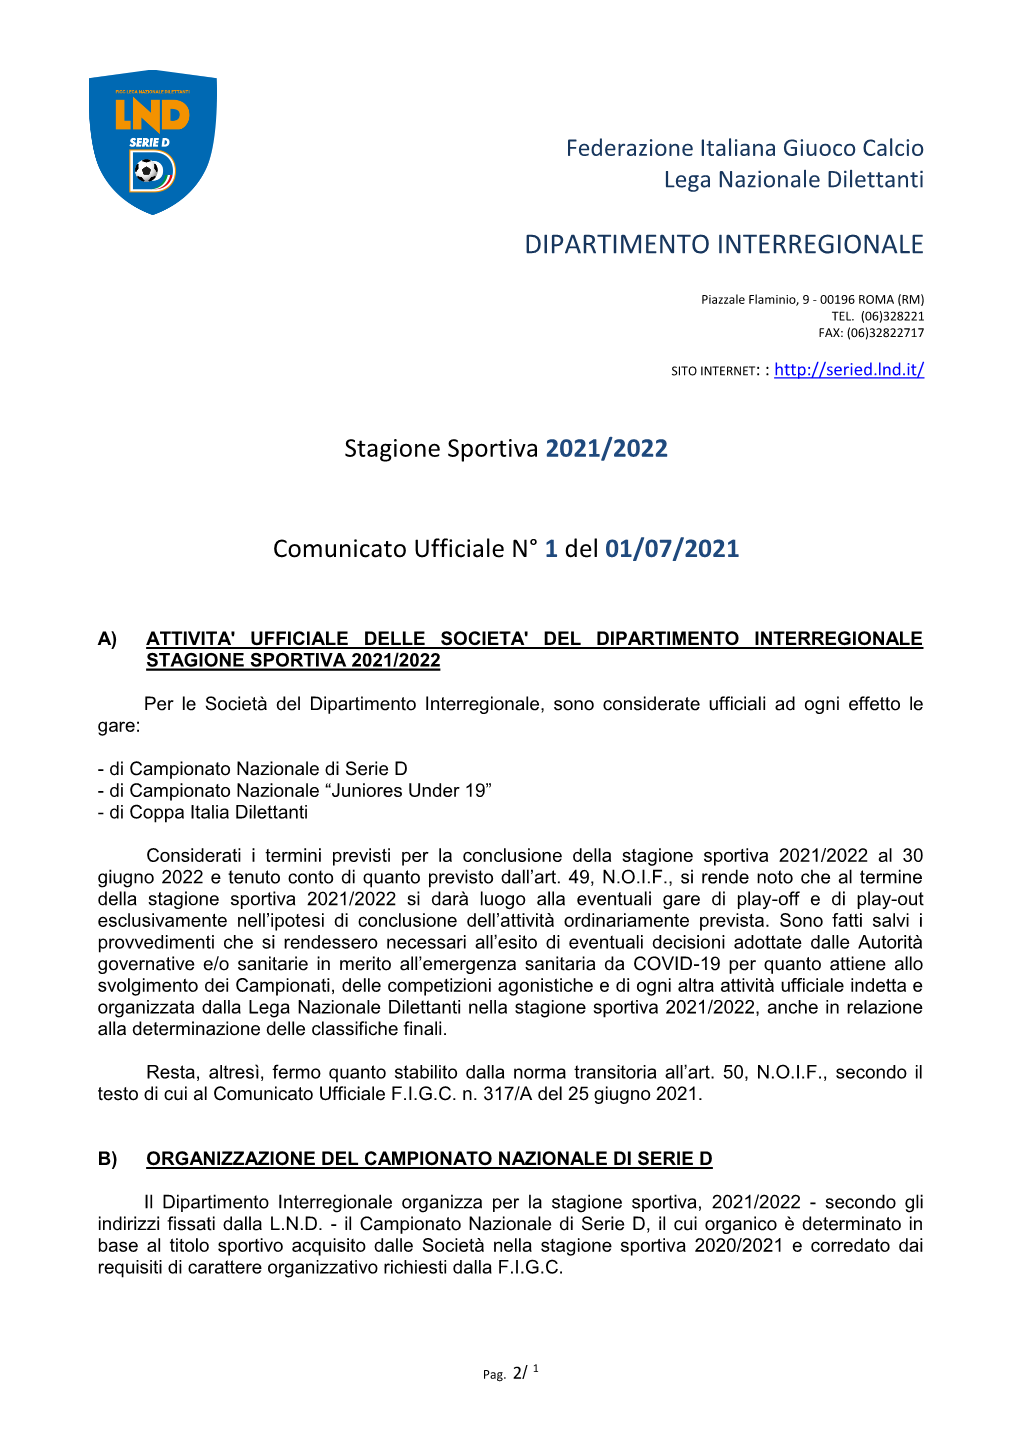 Attività Ufficiale Stagione Sportiva 2021-2022